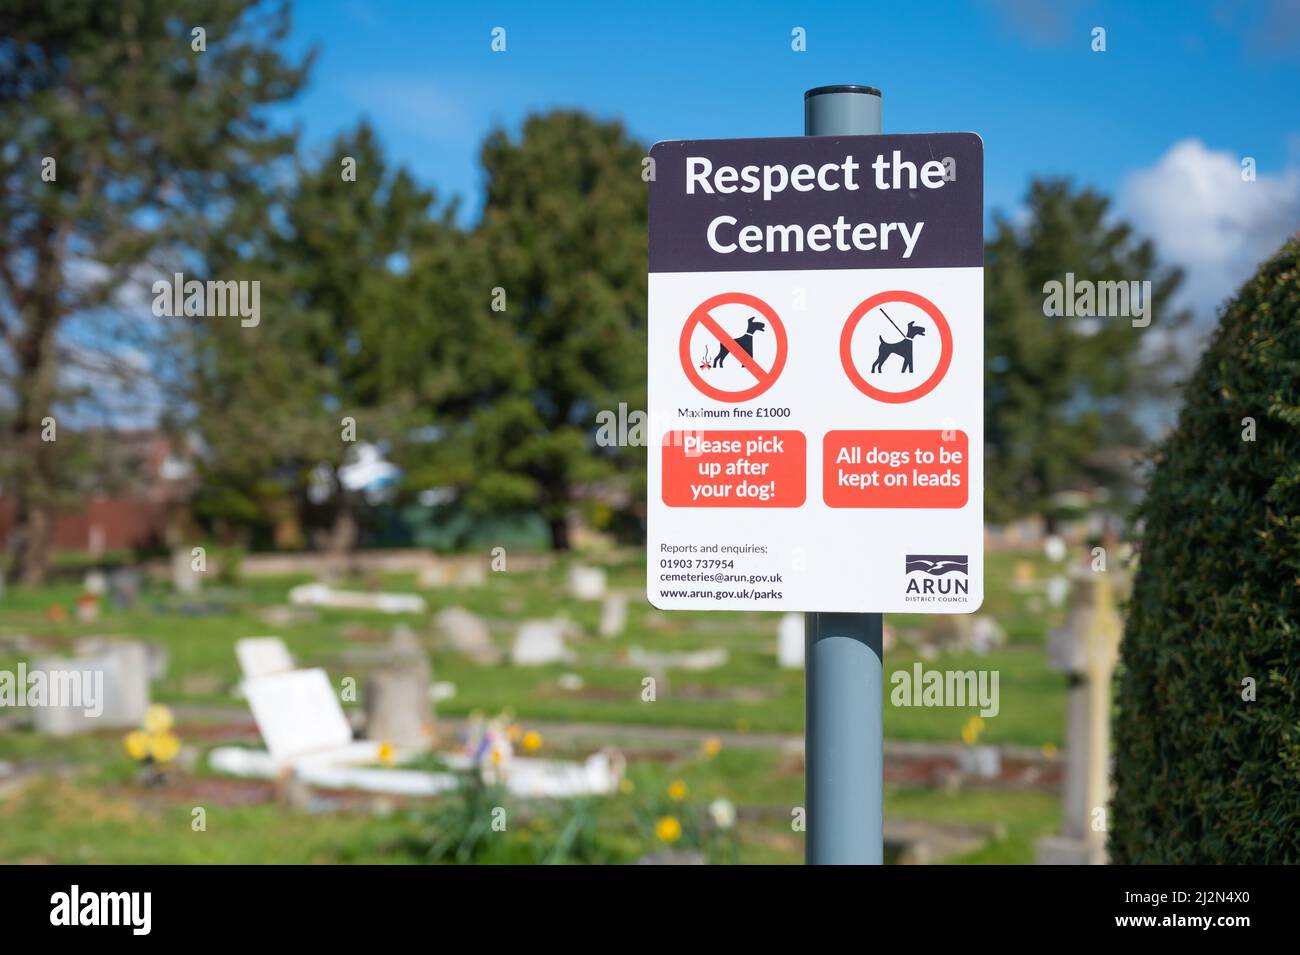 Signez dans un cimetière pour demander aux gens de respecter le cimetière en gardant les chiens sous contrôle et en ramassant leur croque, en Angleterre, au Royaume-Uni. Banque D'Images